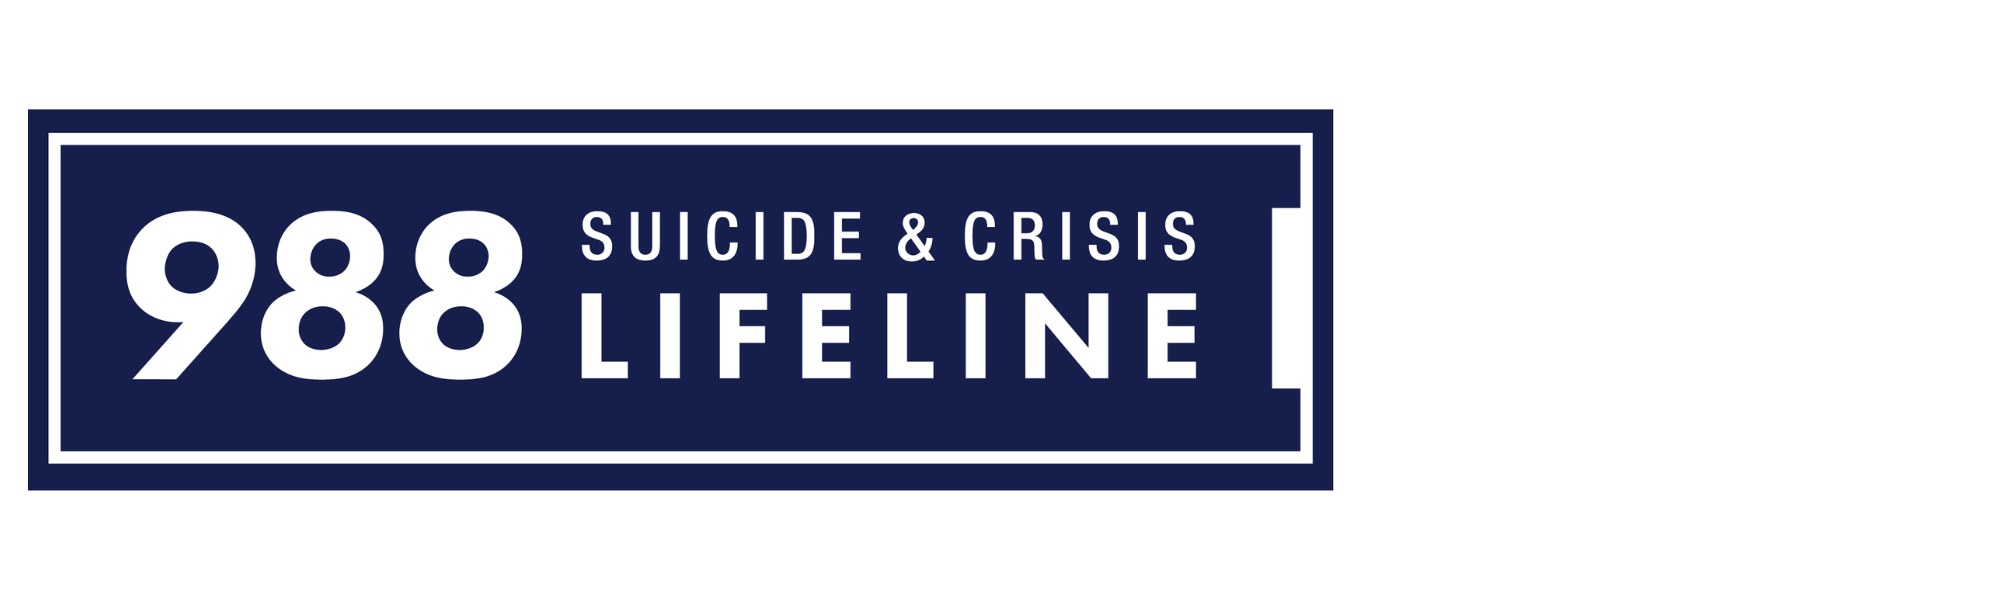 988 Lifeline Logo